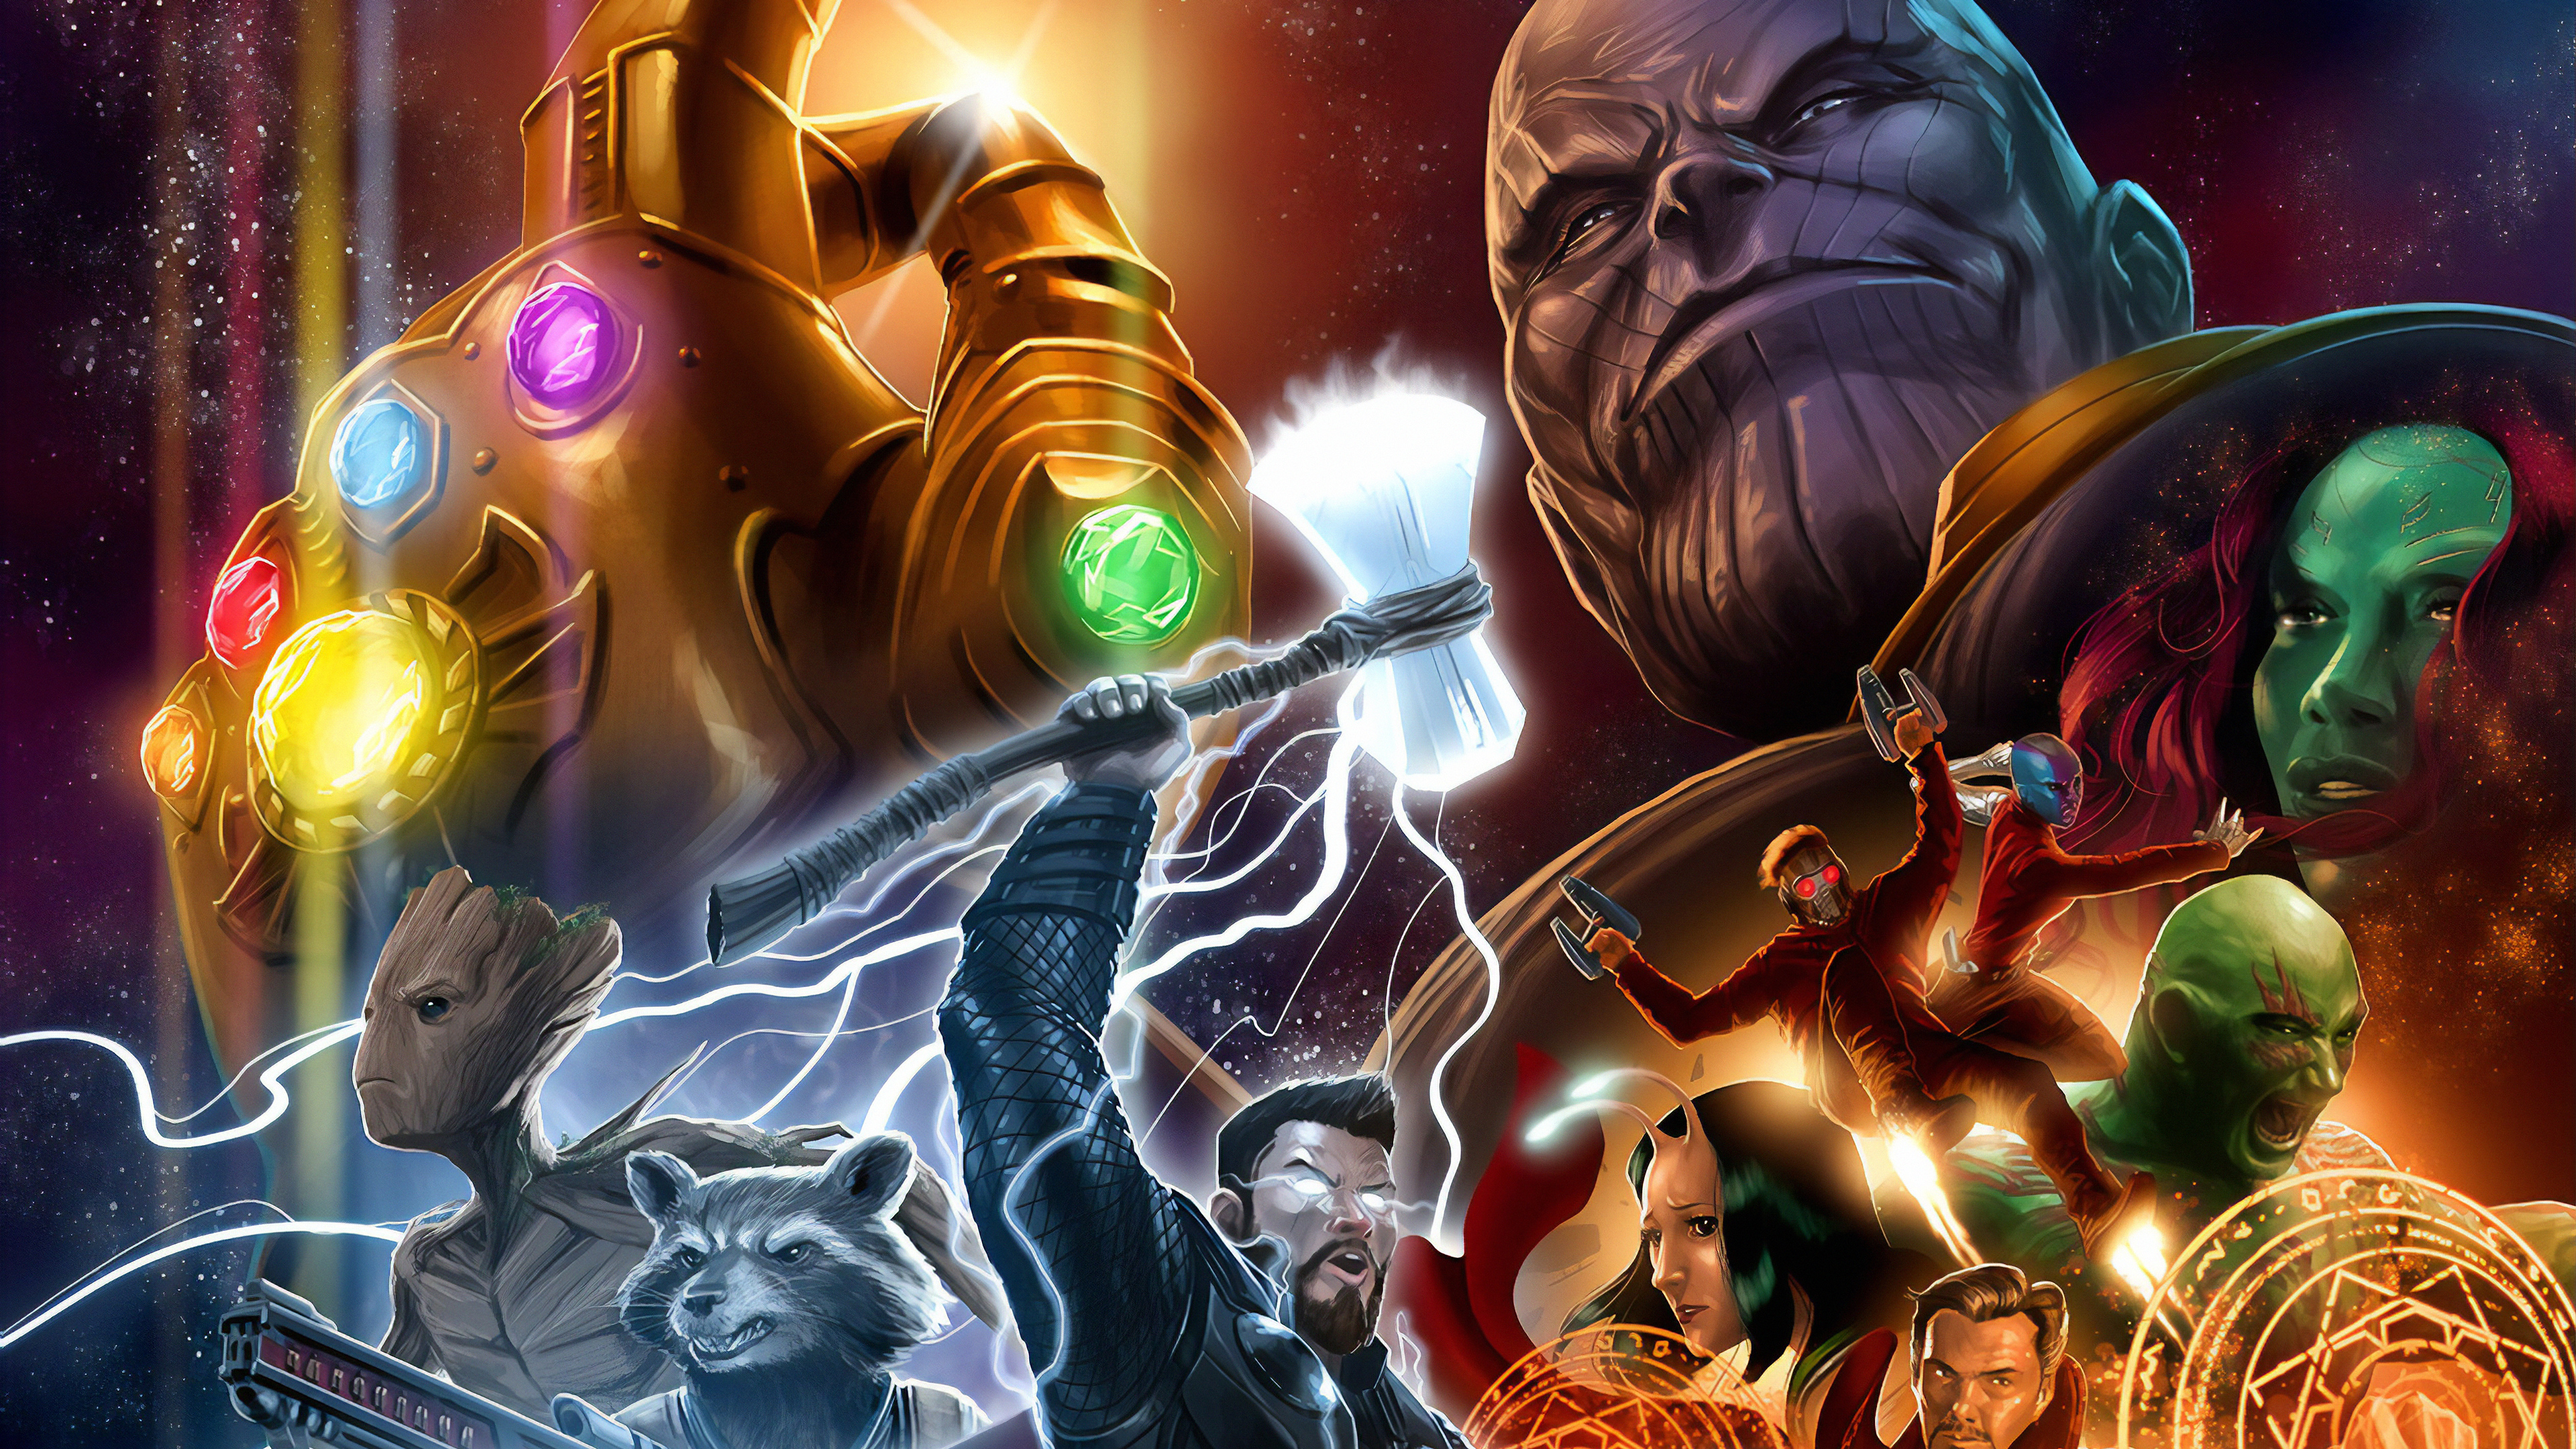 Avengers Endgame Wallpaper: Tải miễn phí hình nền Avengers Endgame để khám phá thế giới siêu anh hùng của Marvel. Với những hình ảnh sống động và tính năng tùy chỉnh cao, bạn có thể thỏa sức tạo ra bộ sưu tập hình nền siêu tuyệt vời của riêng mình.